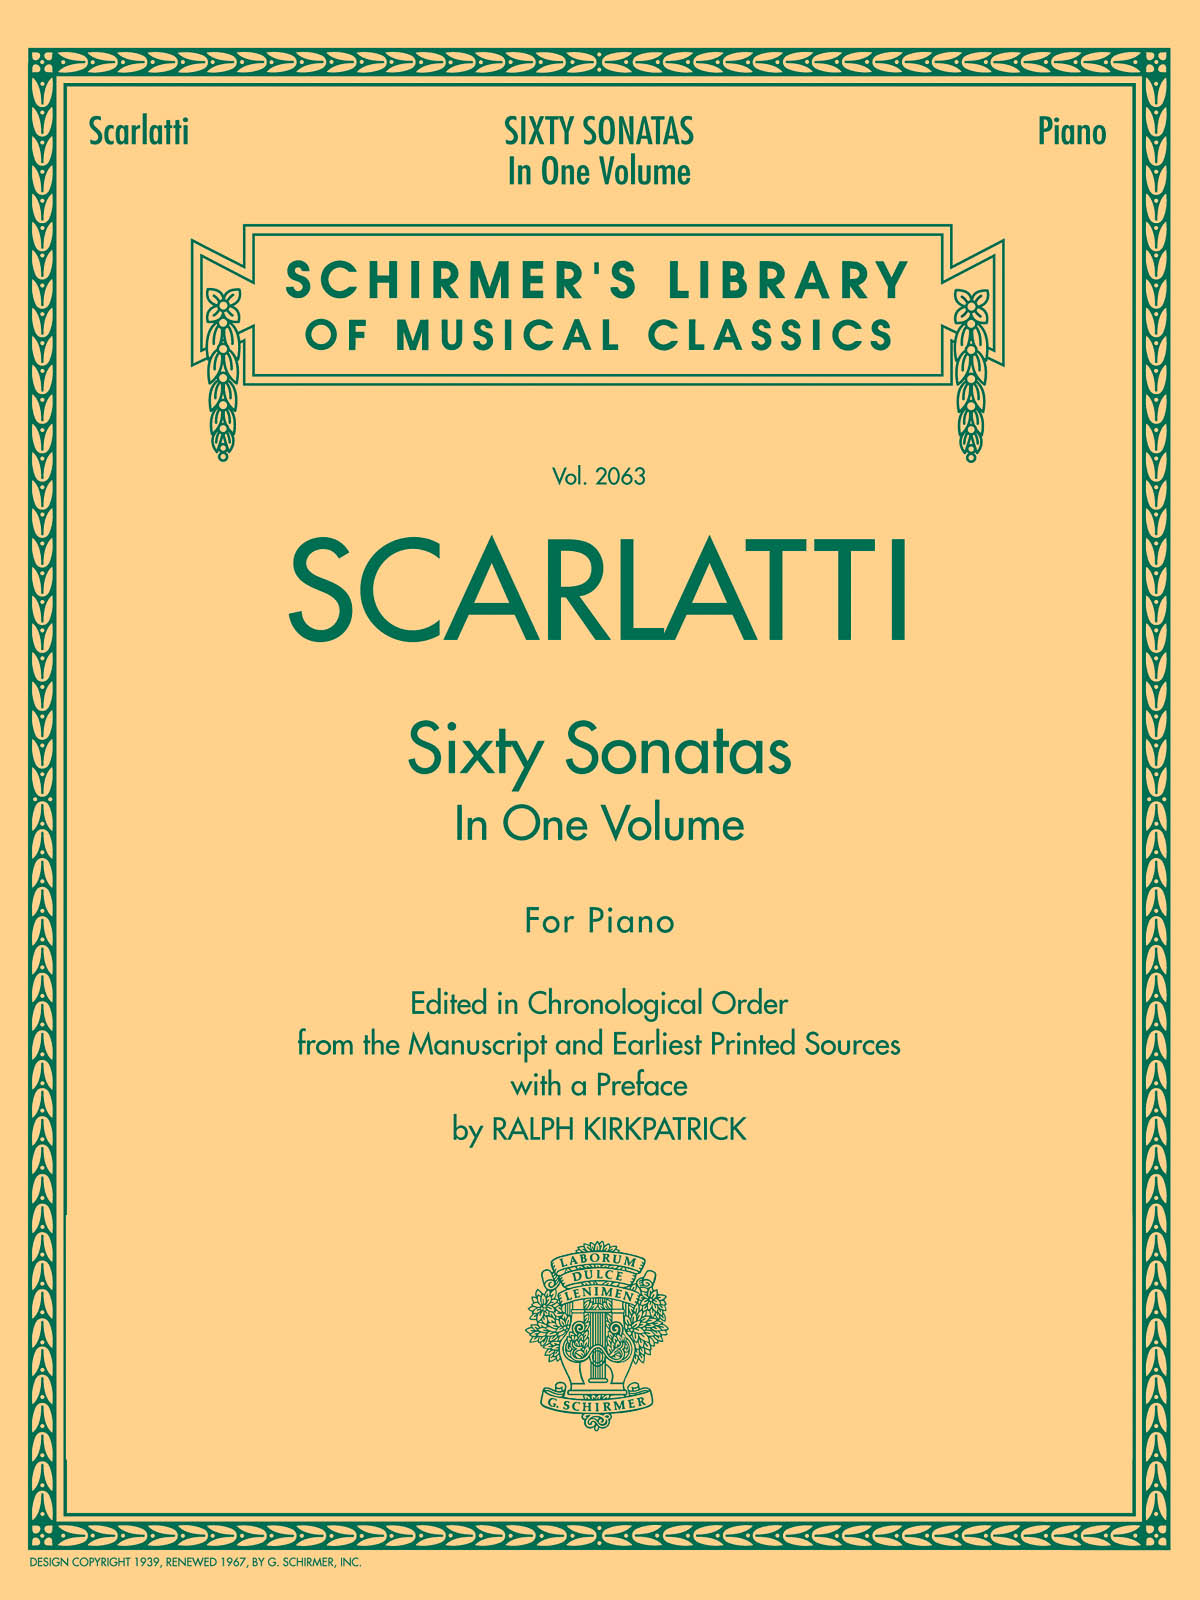 Domenico Scarlatti: 60 Sonatas, Books 1 and 2